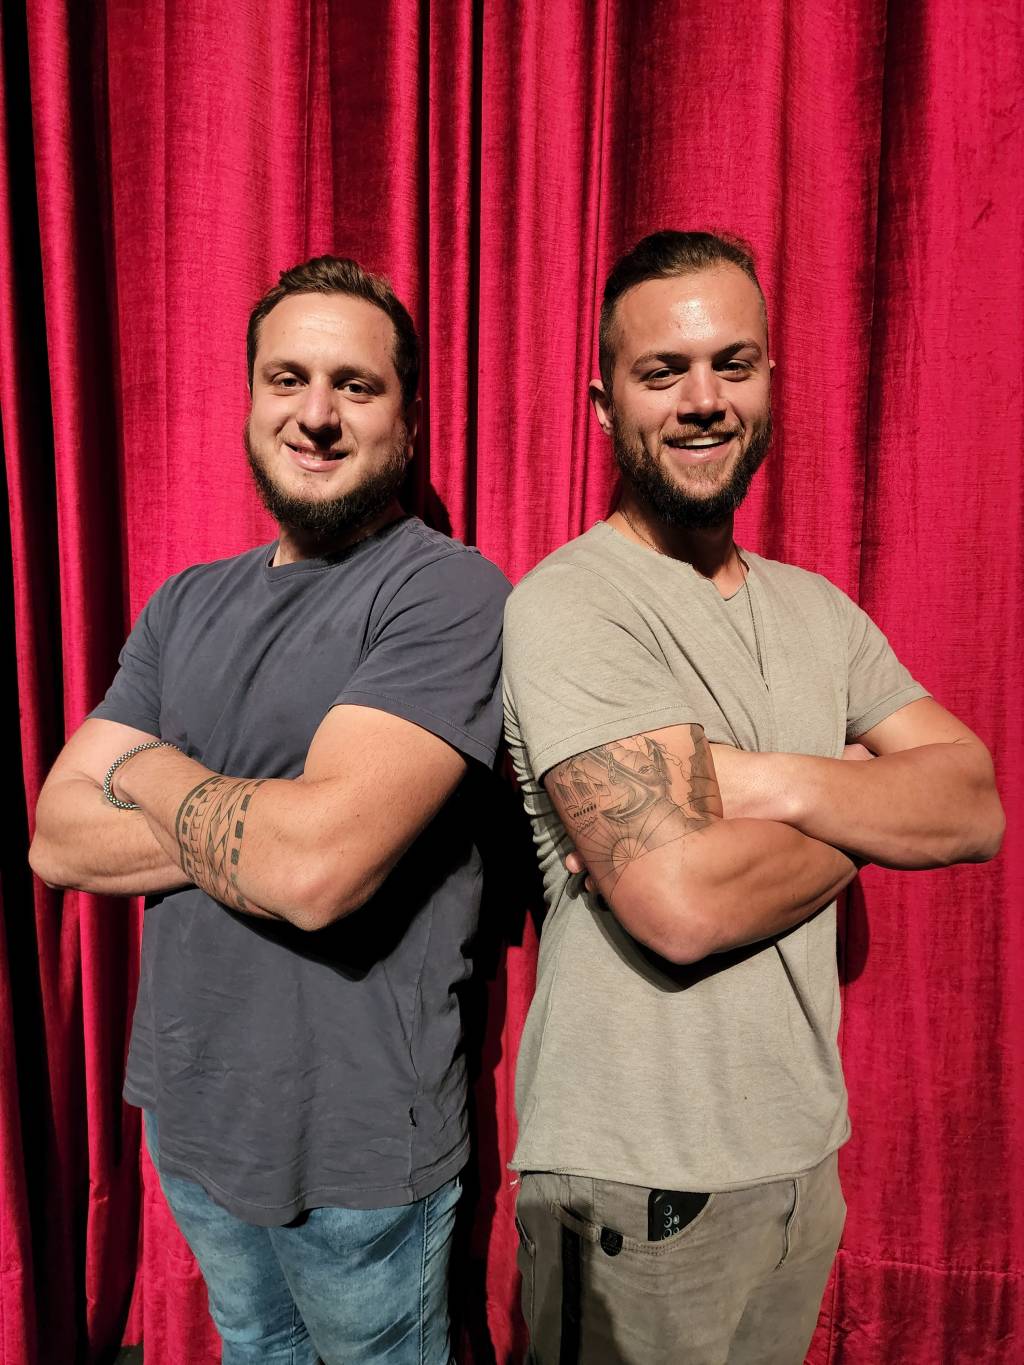 Dois homens posam de braços cruzados sorrindo. Ambos vestem camisetas escuras e estão em frente a cortina vermelha.